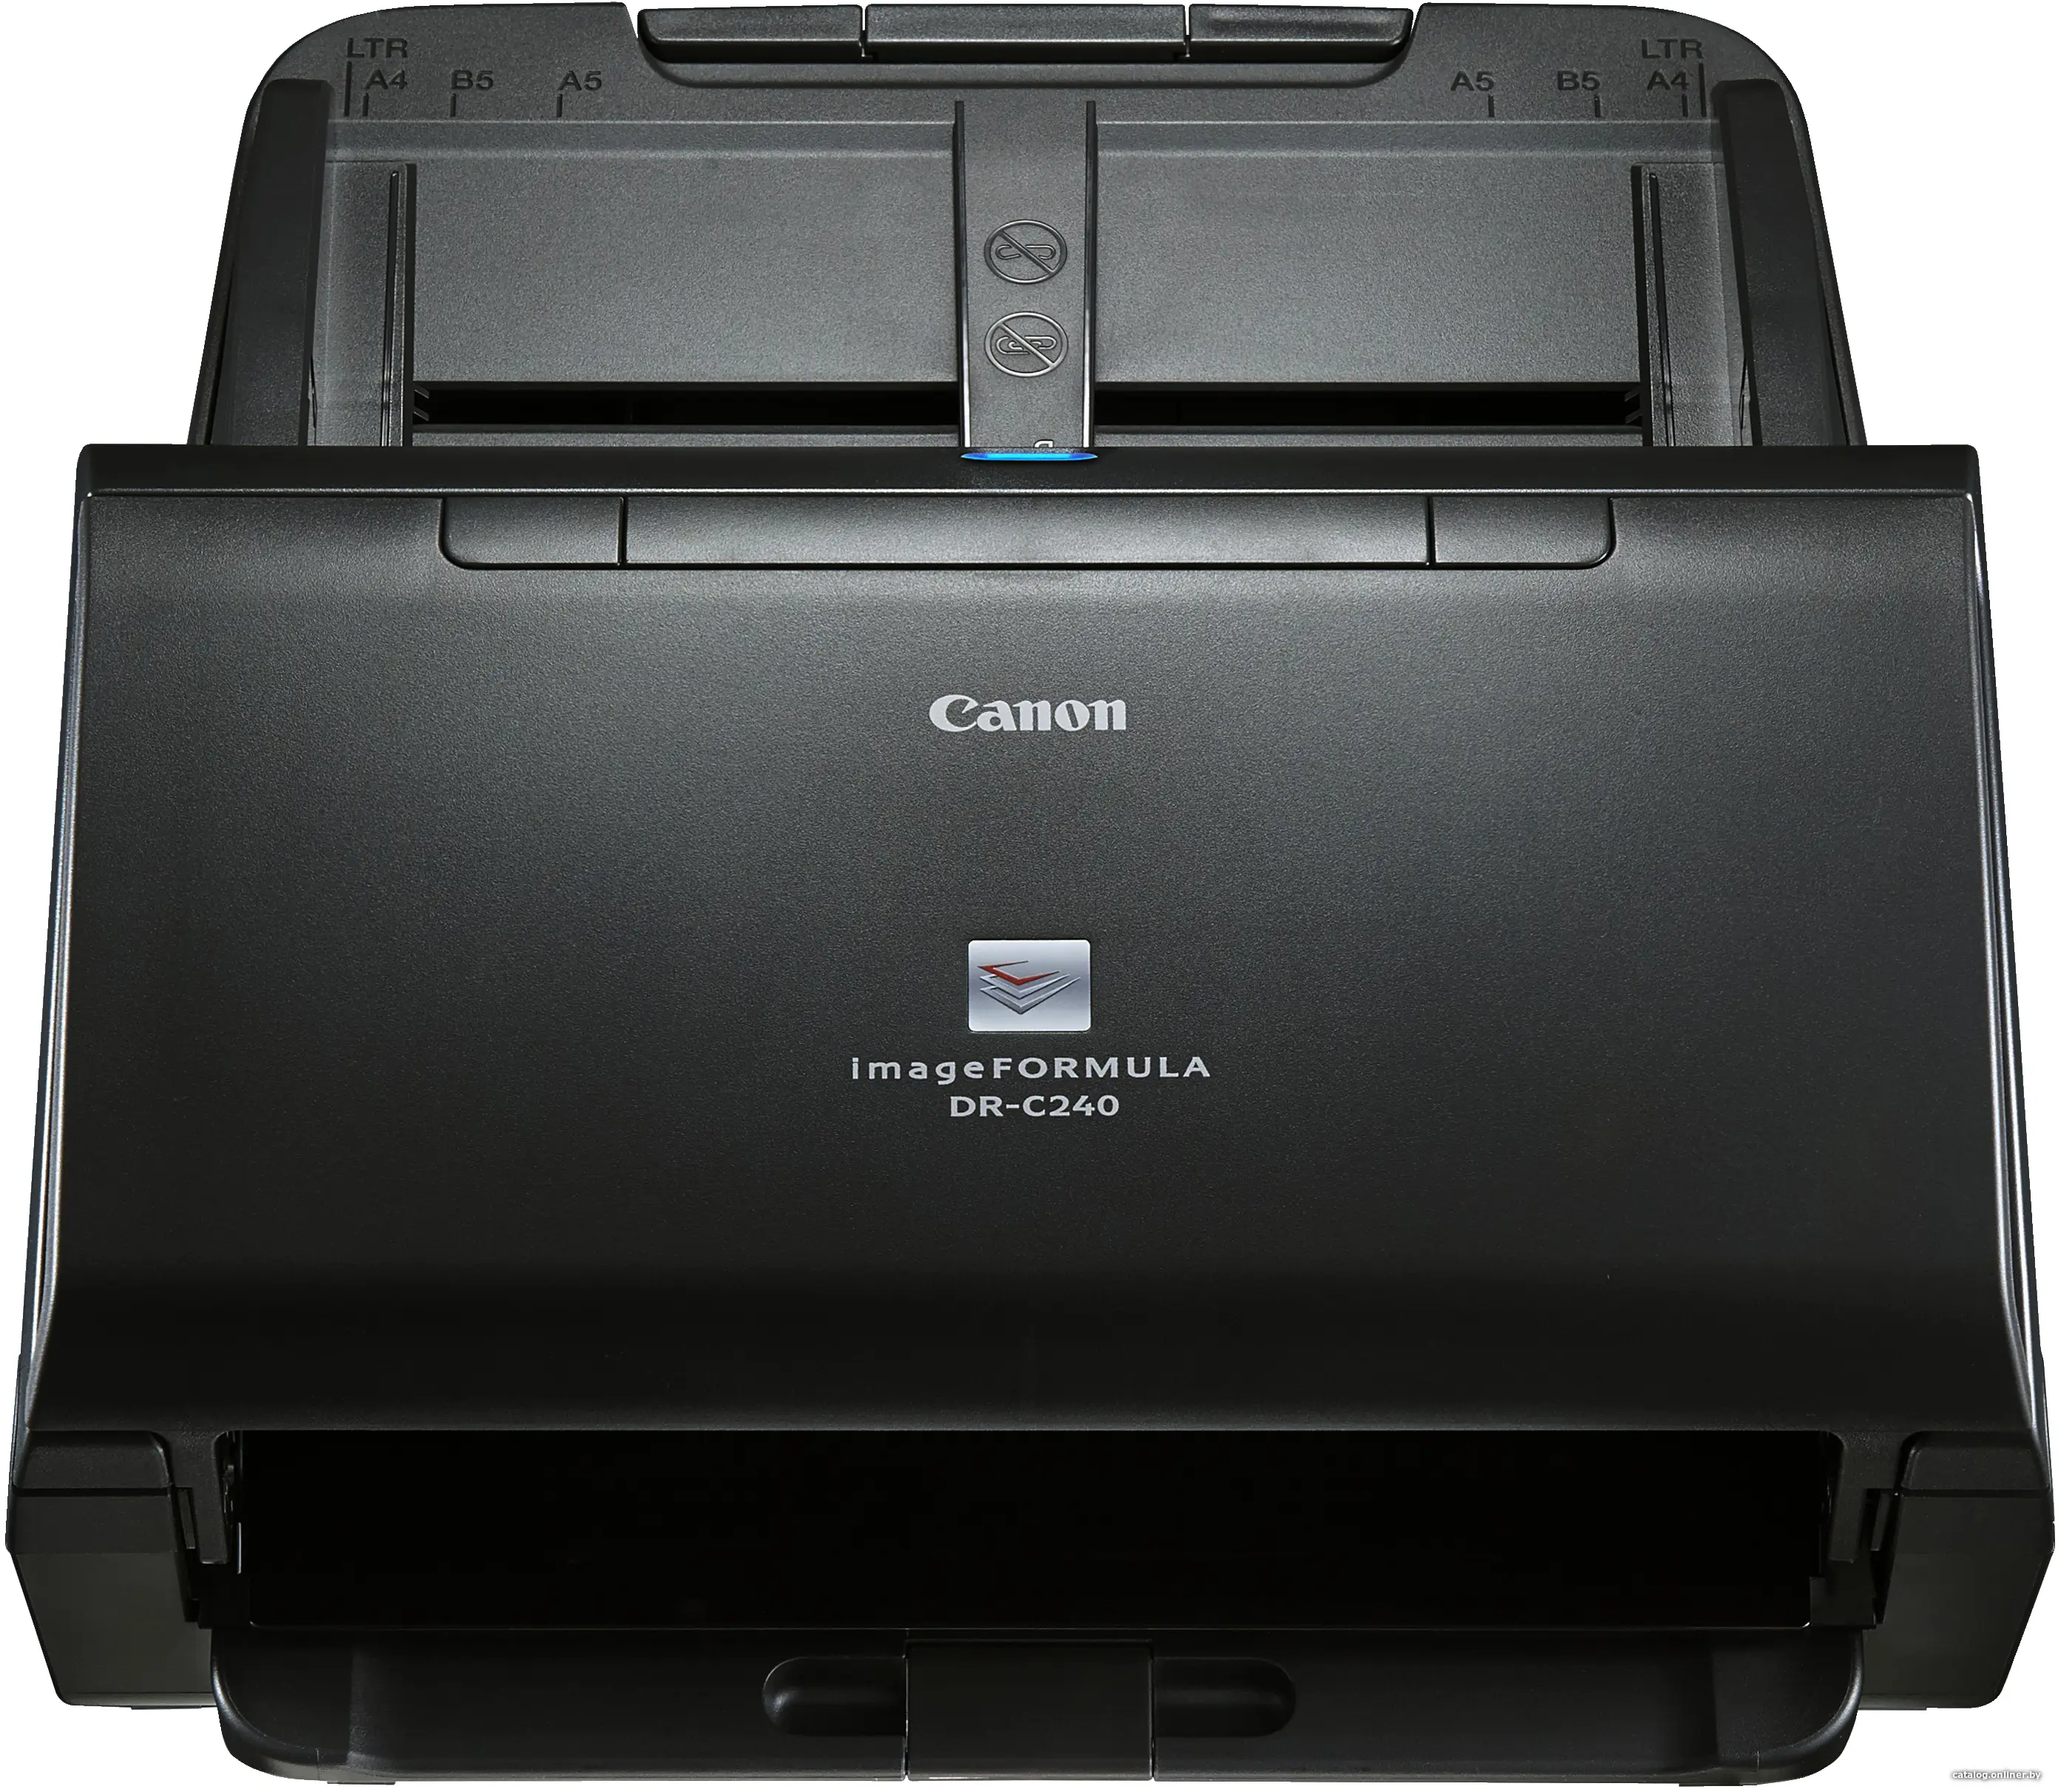 Купить Сканер Canon DR-C240, цена, опт и розница